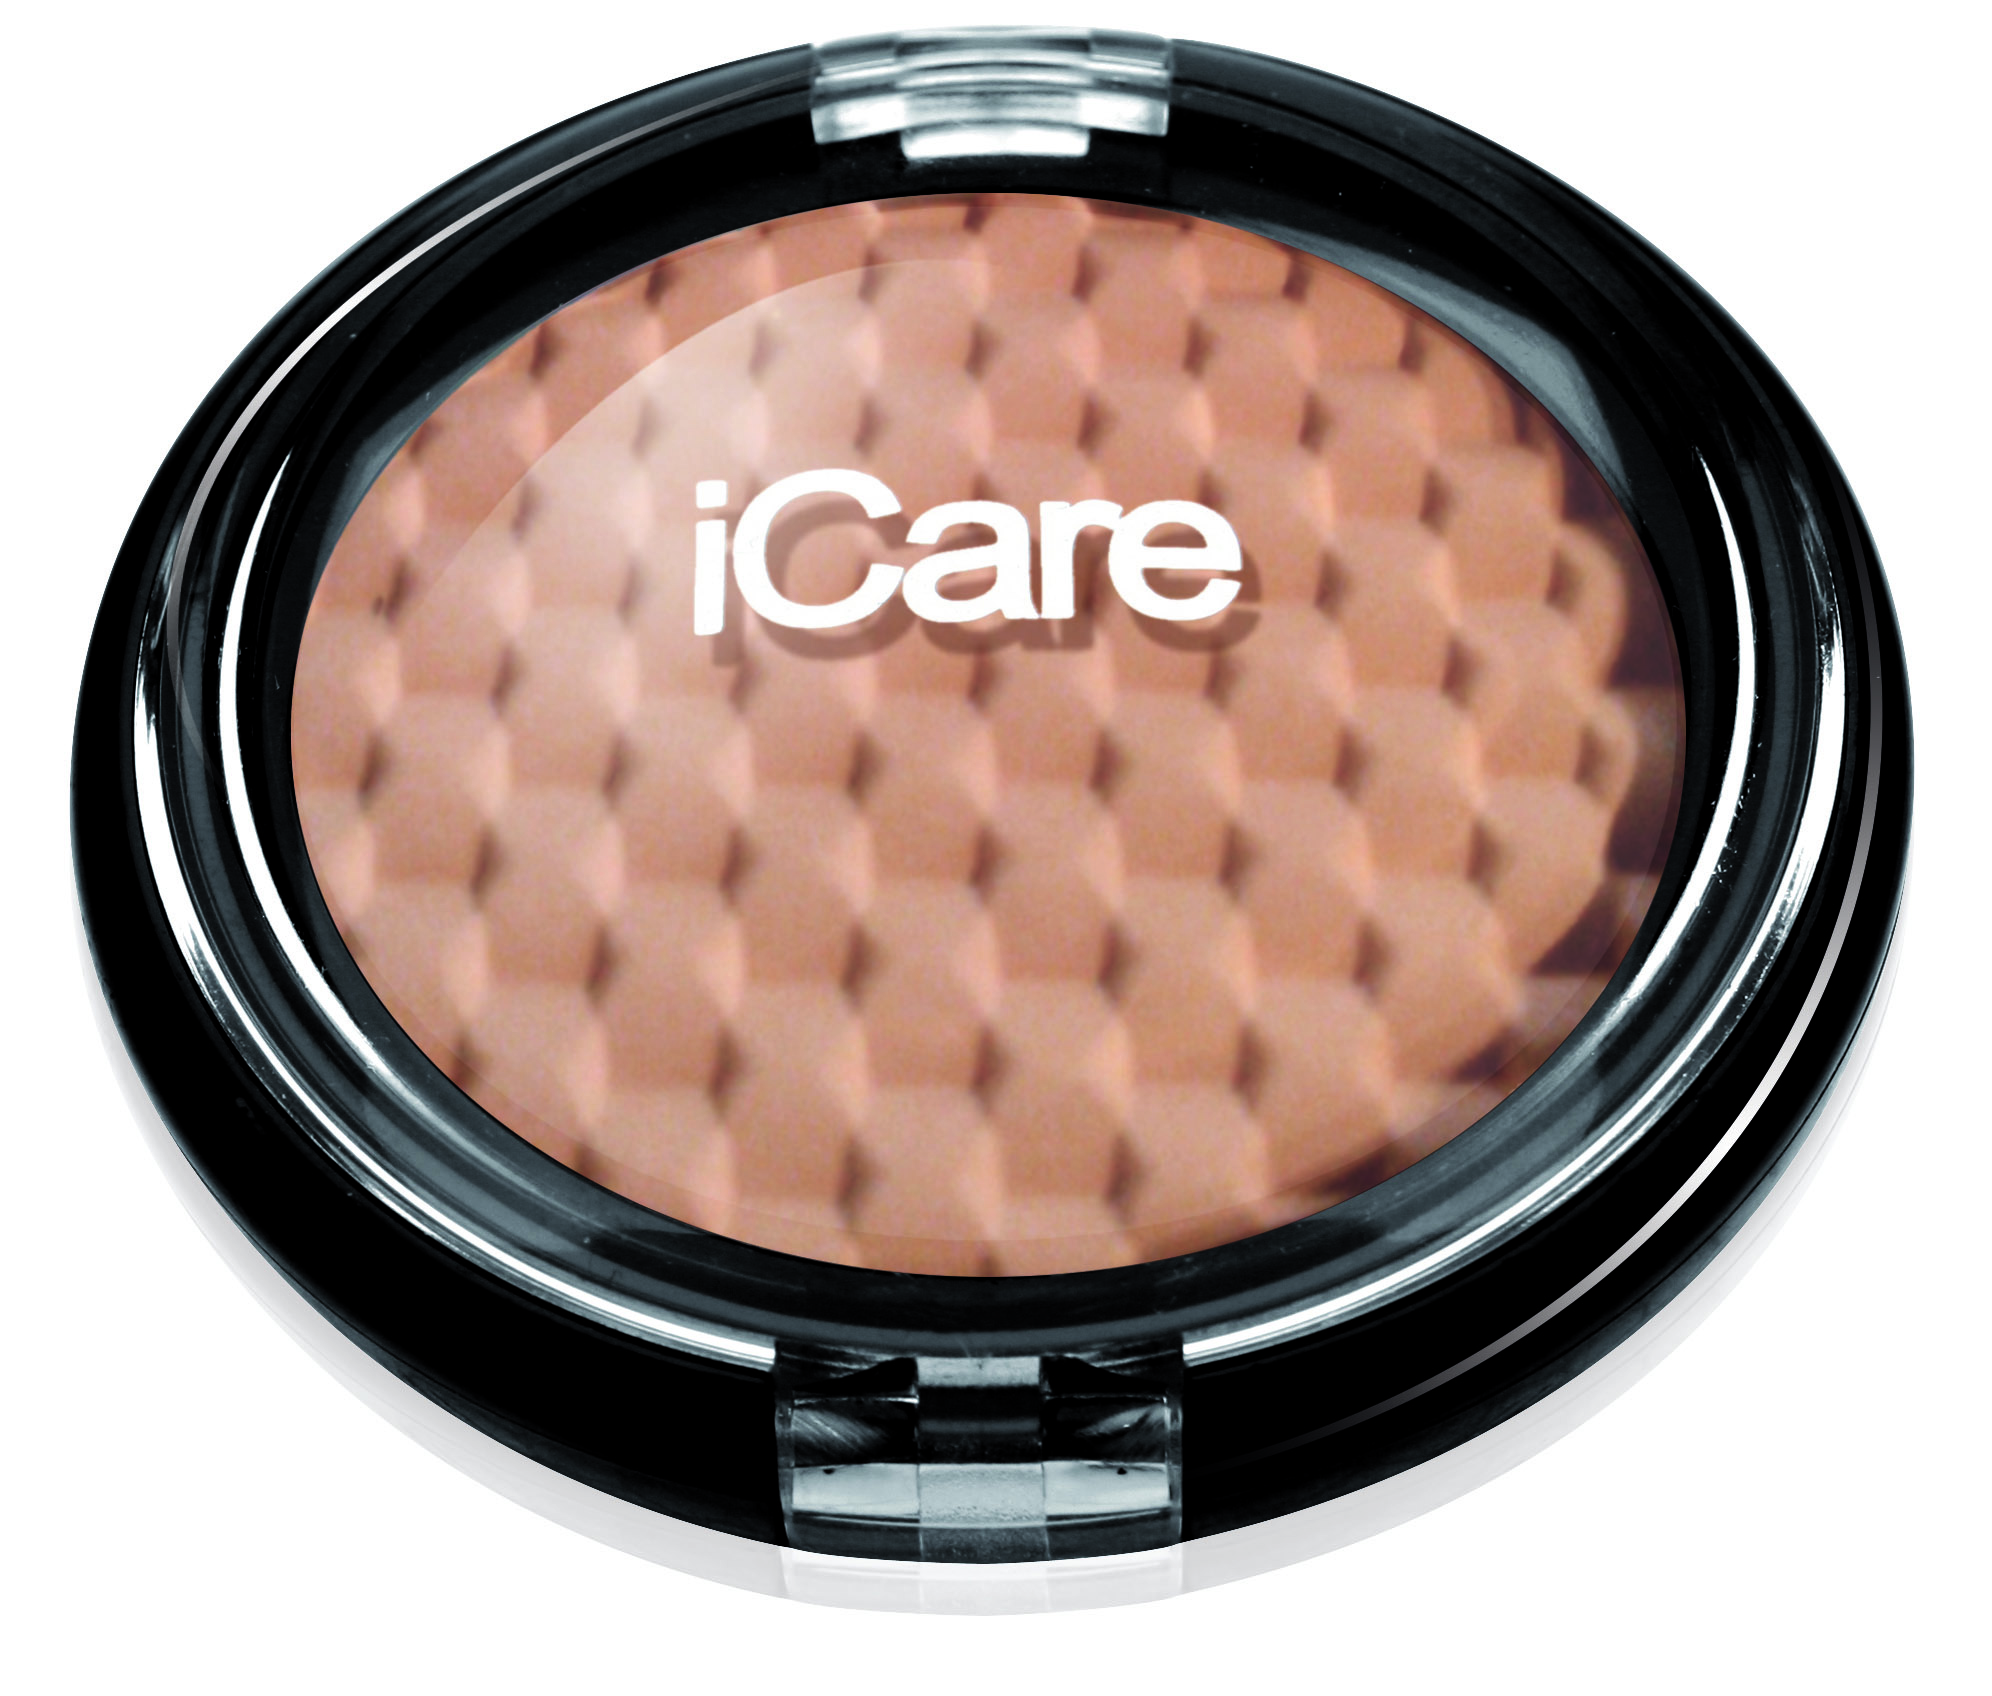 iCare make up